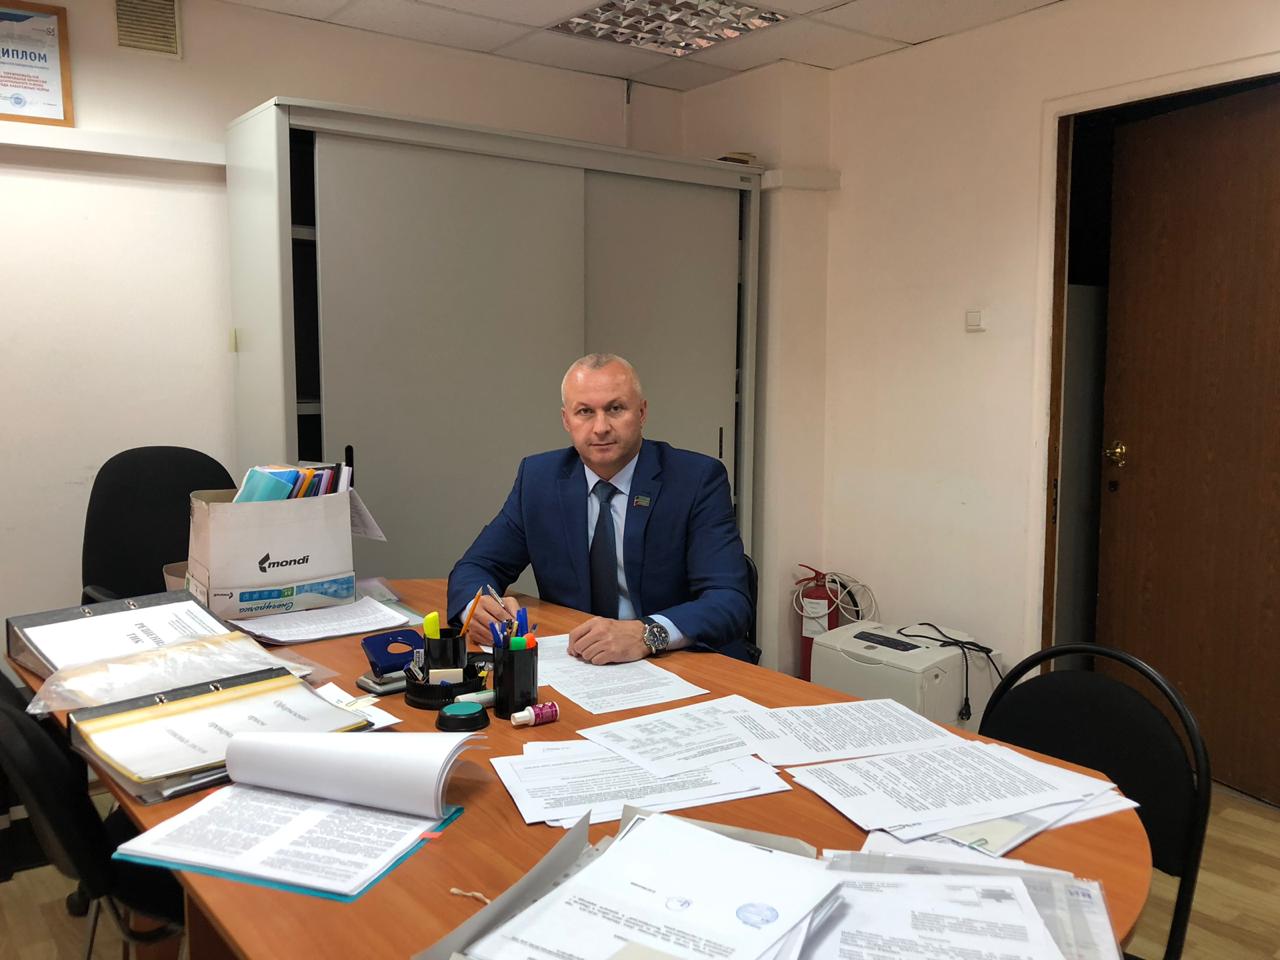 Олег Николаев выдвинул кандидатуру на выборы в Госсовет